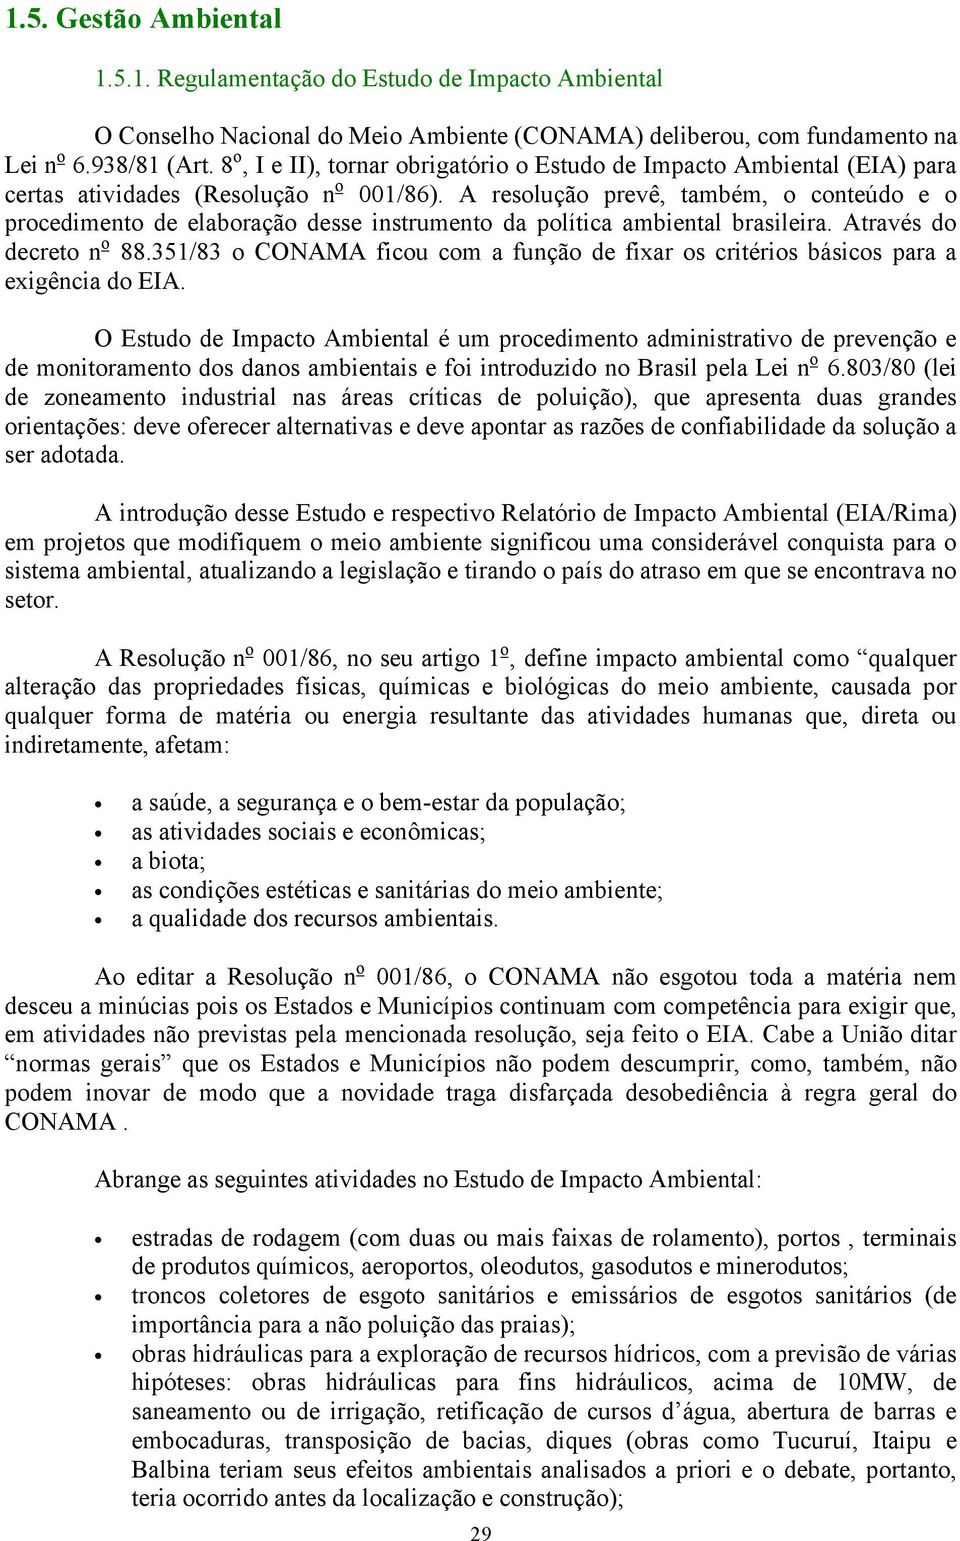 A resolução prevê, também, o conteúdo e o procedimento de elaboração desse instrumento da política ambiental brasileira. Através do decreto n o 88.